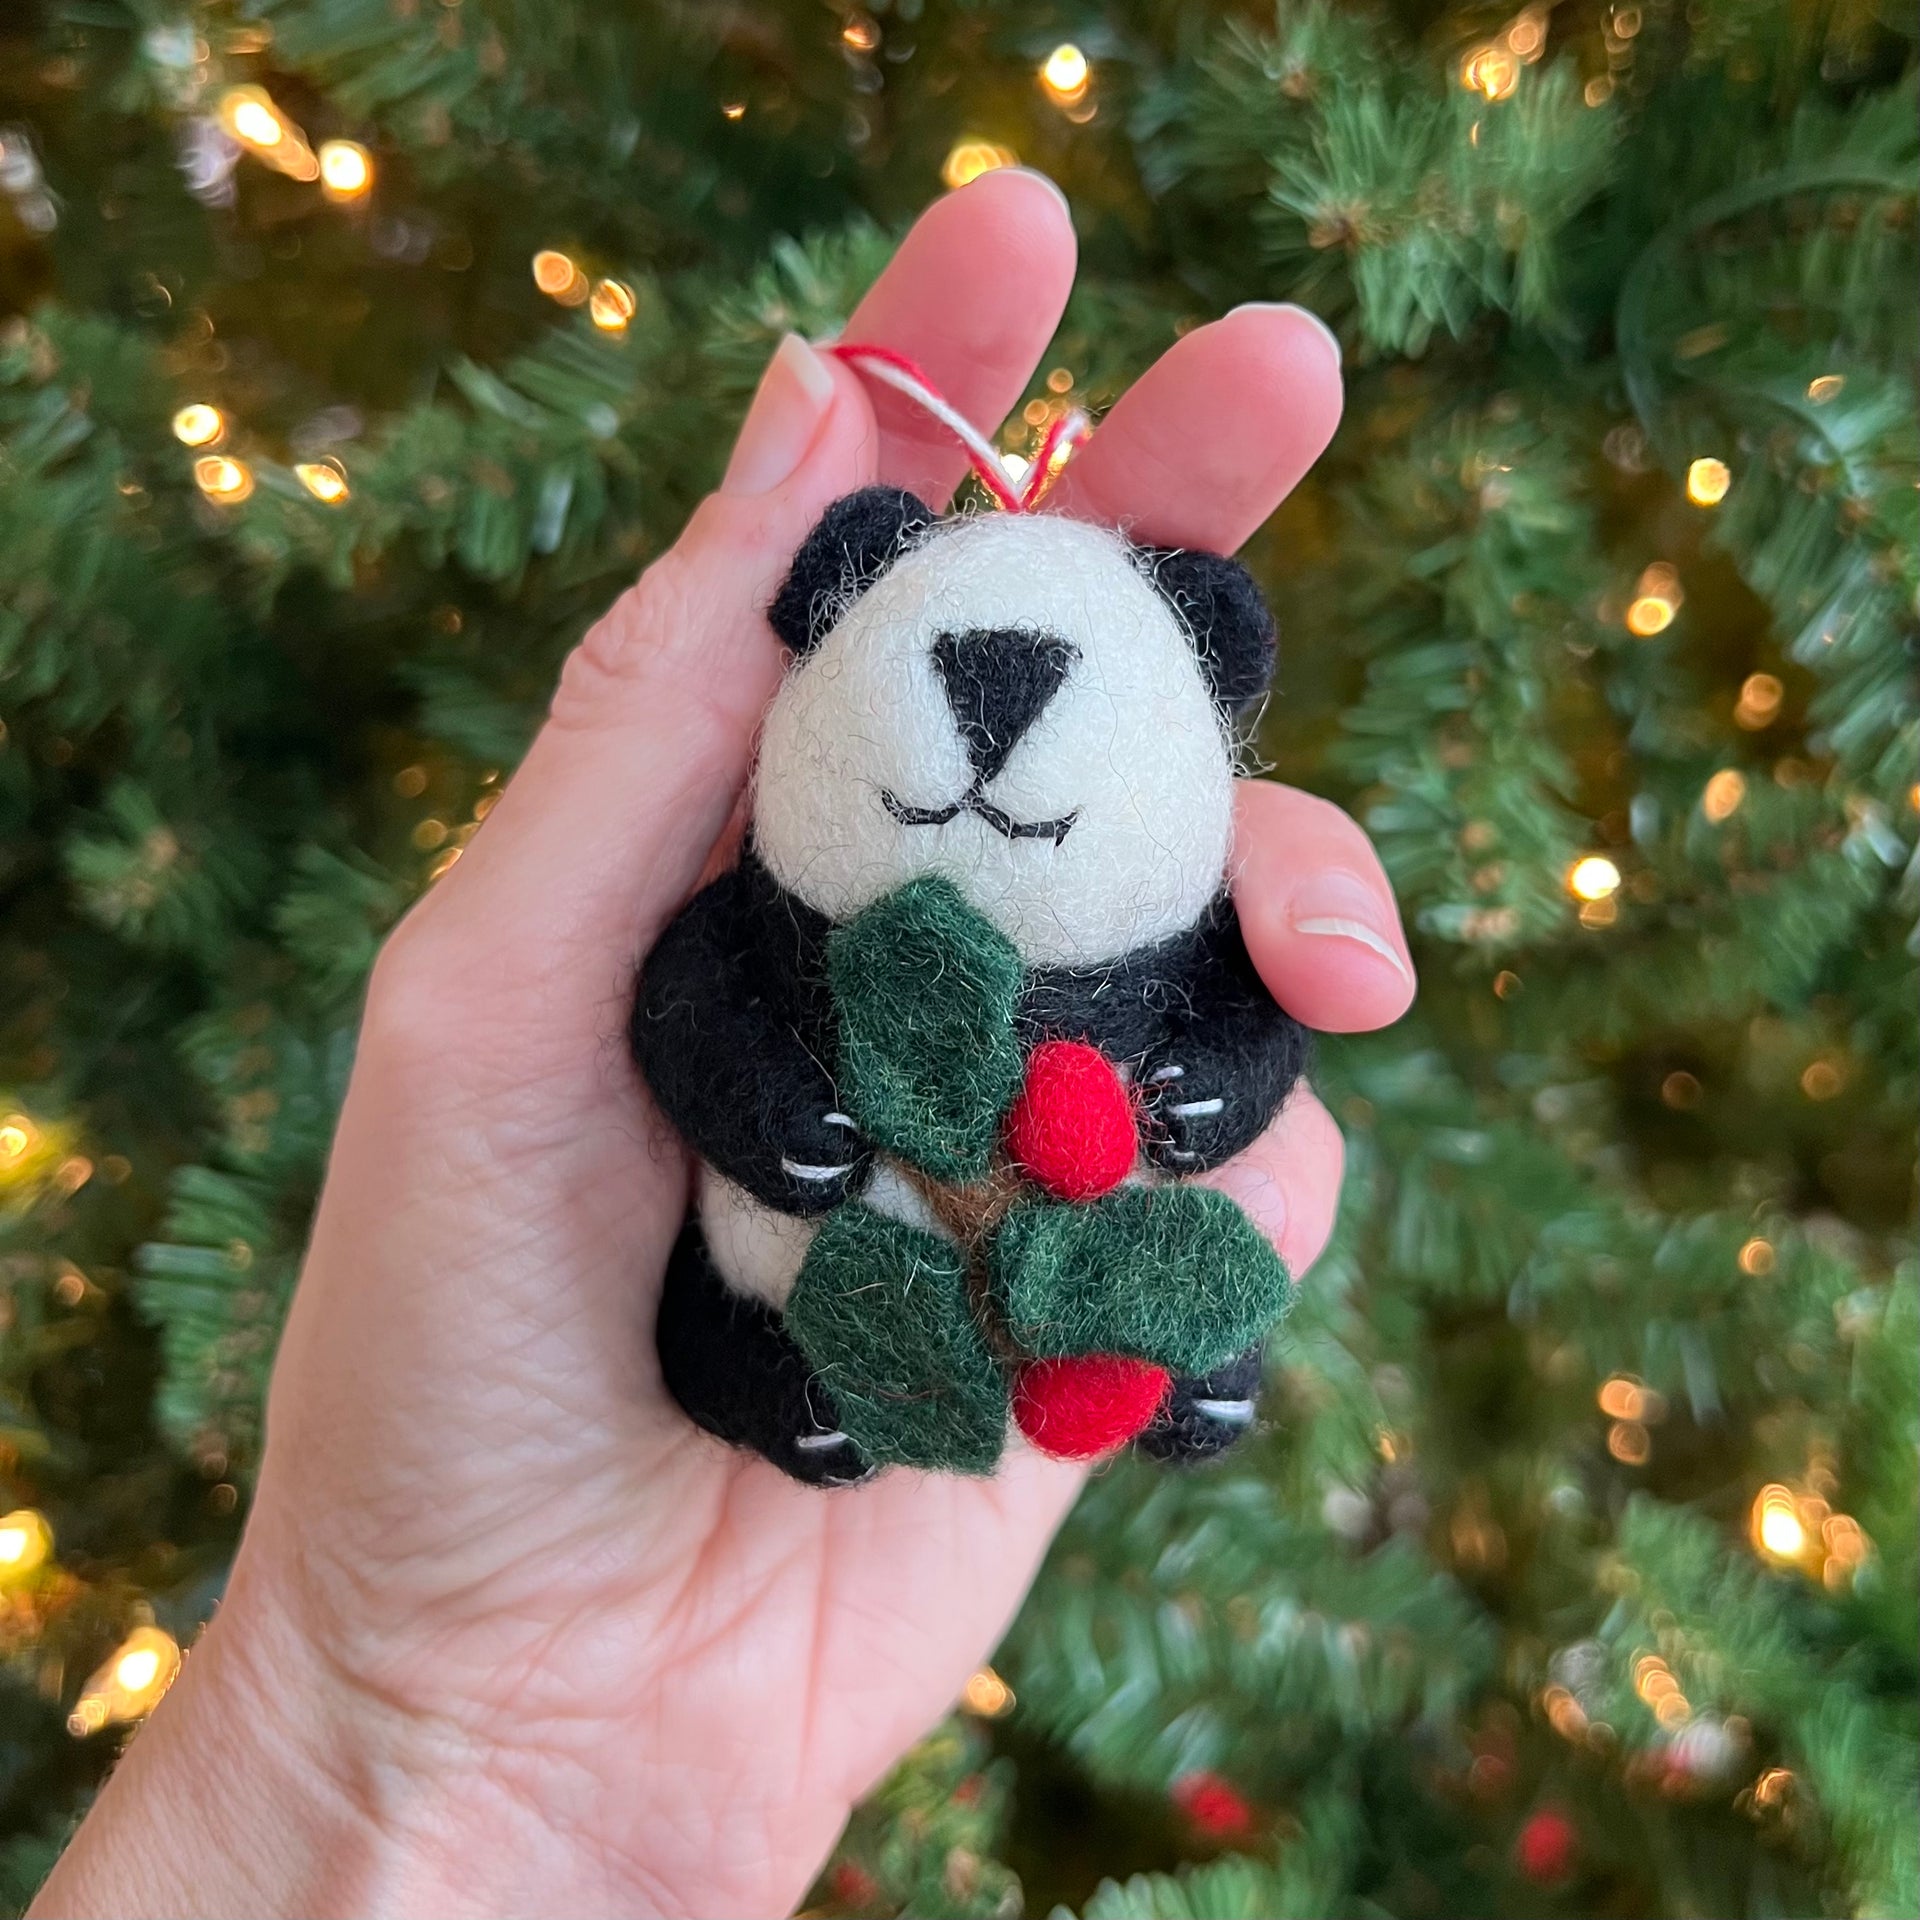 Panda Bear Ornament, Tufted Wool